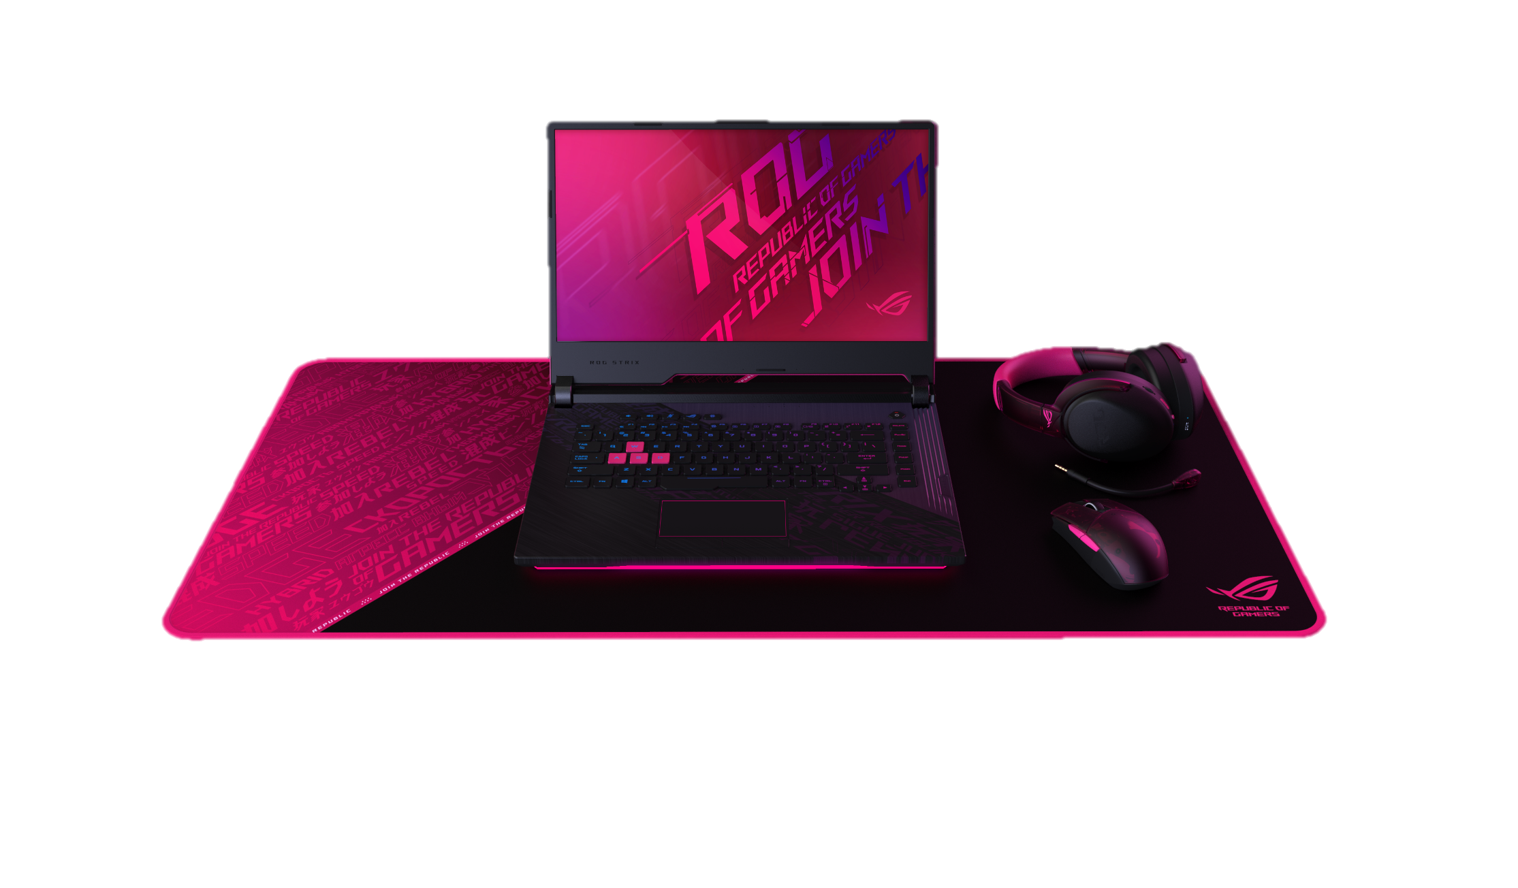 ASUS ROG công bố dải laptop gaming trang bị CPU Intel Core thế hệ 10 cùng giải pháp tản nhiệt kim loại lỏng